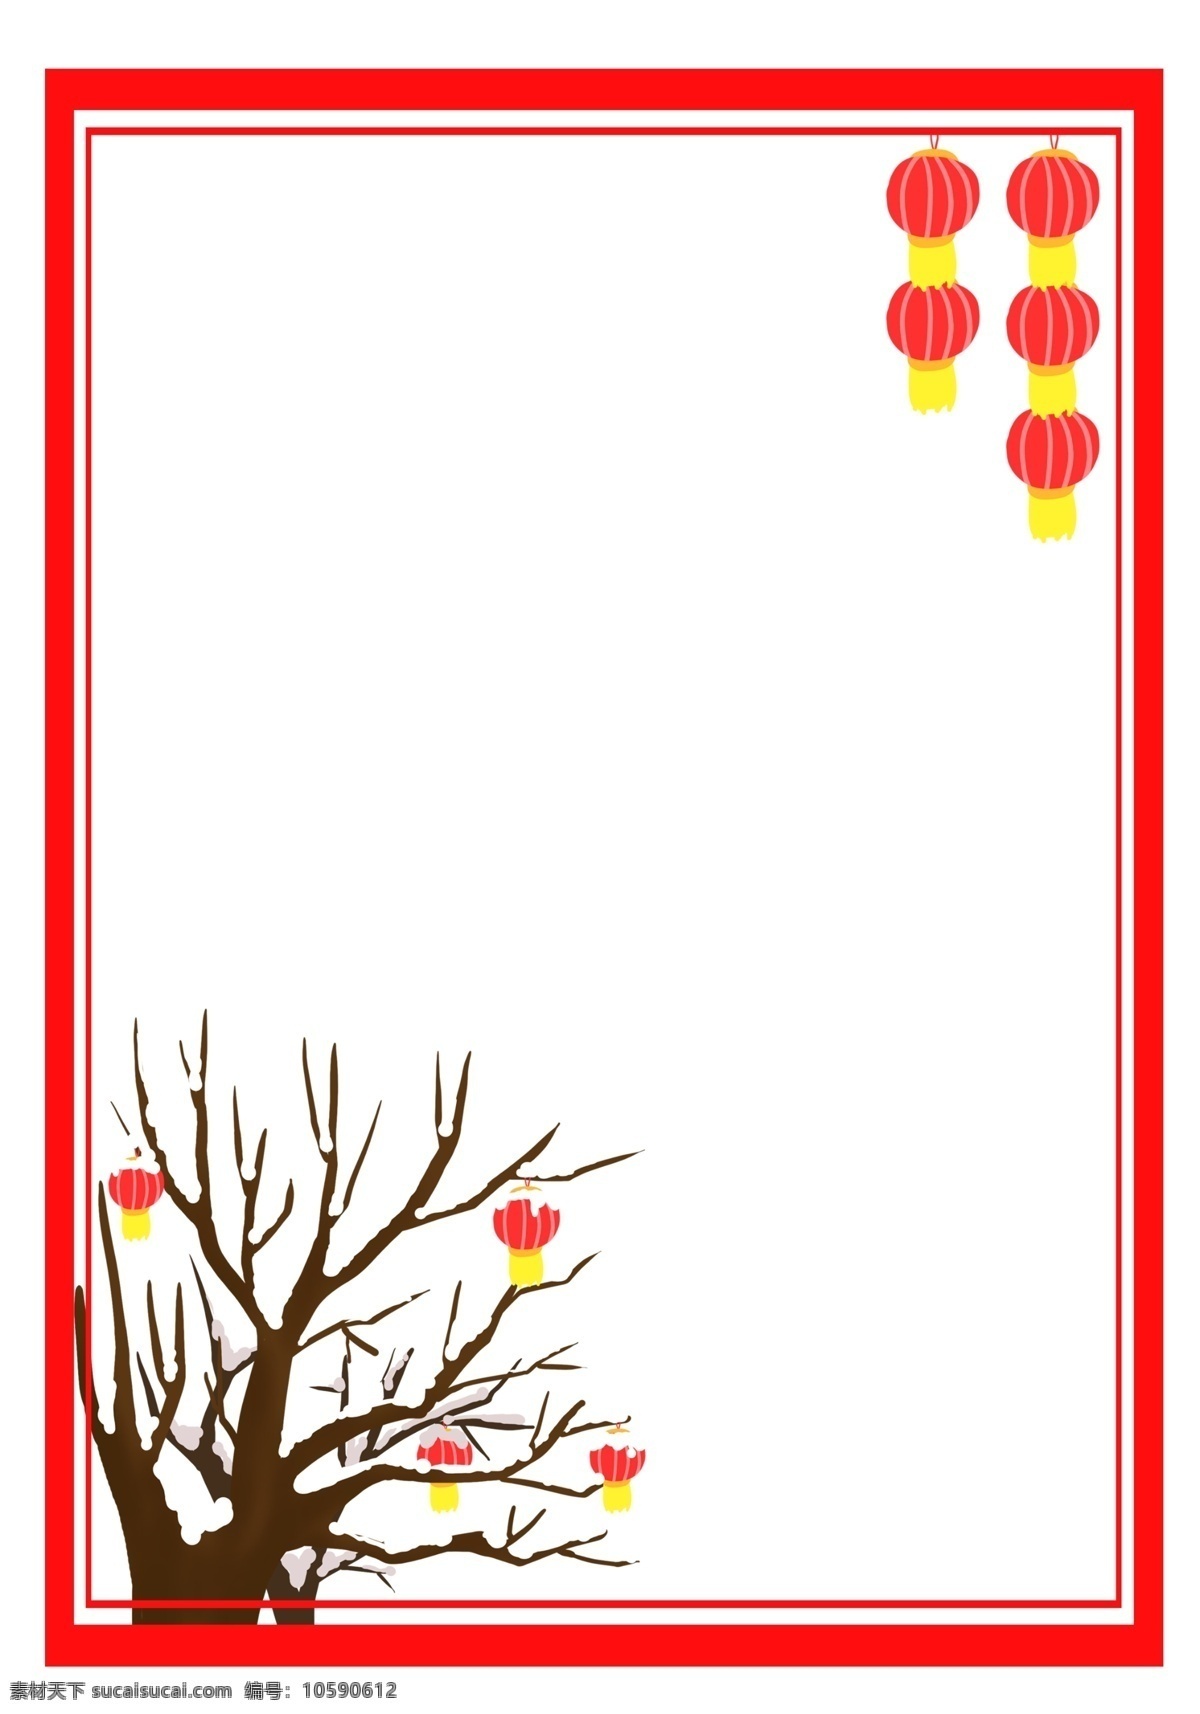 手绘 冬季 中国 风 树枝 边框 雪 覆盖 树杈 红灯笼 红色边框 中国风 雪地 下雪 国画风 复古树枝 水墨树枝 卡通手绘灯笼